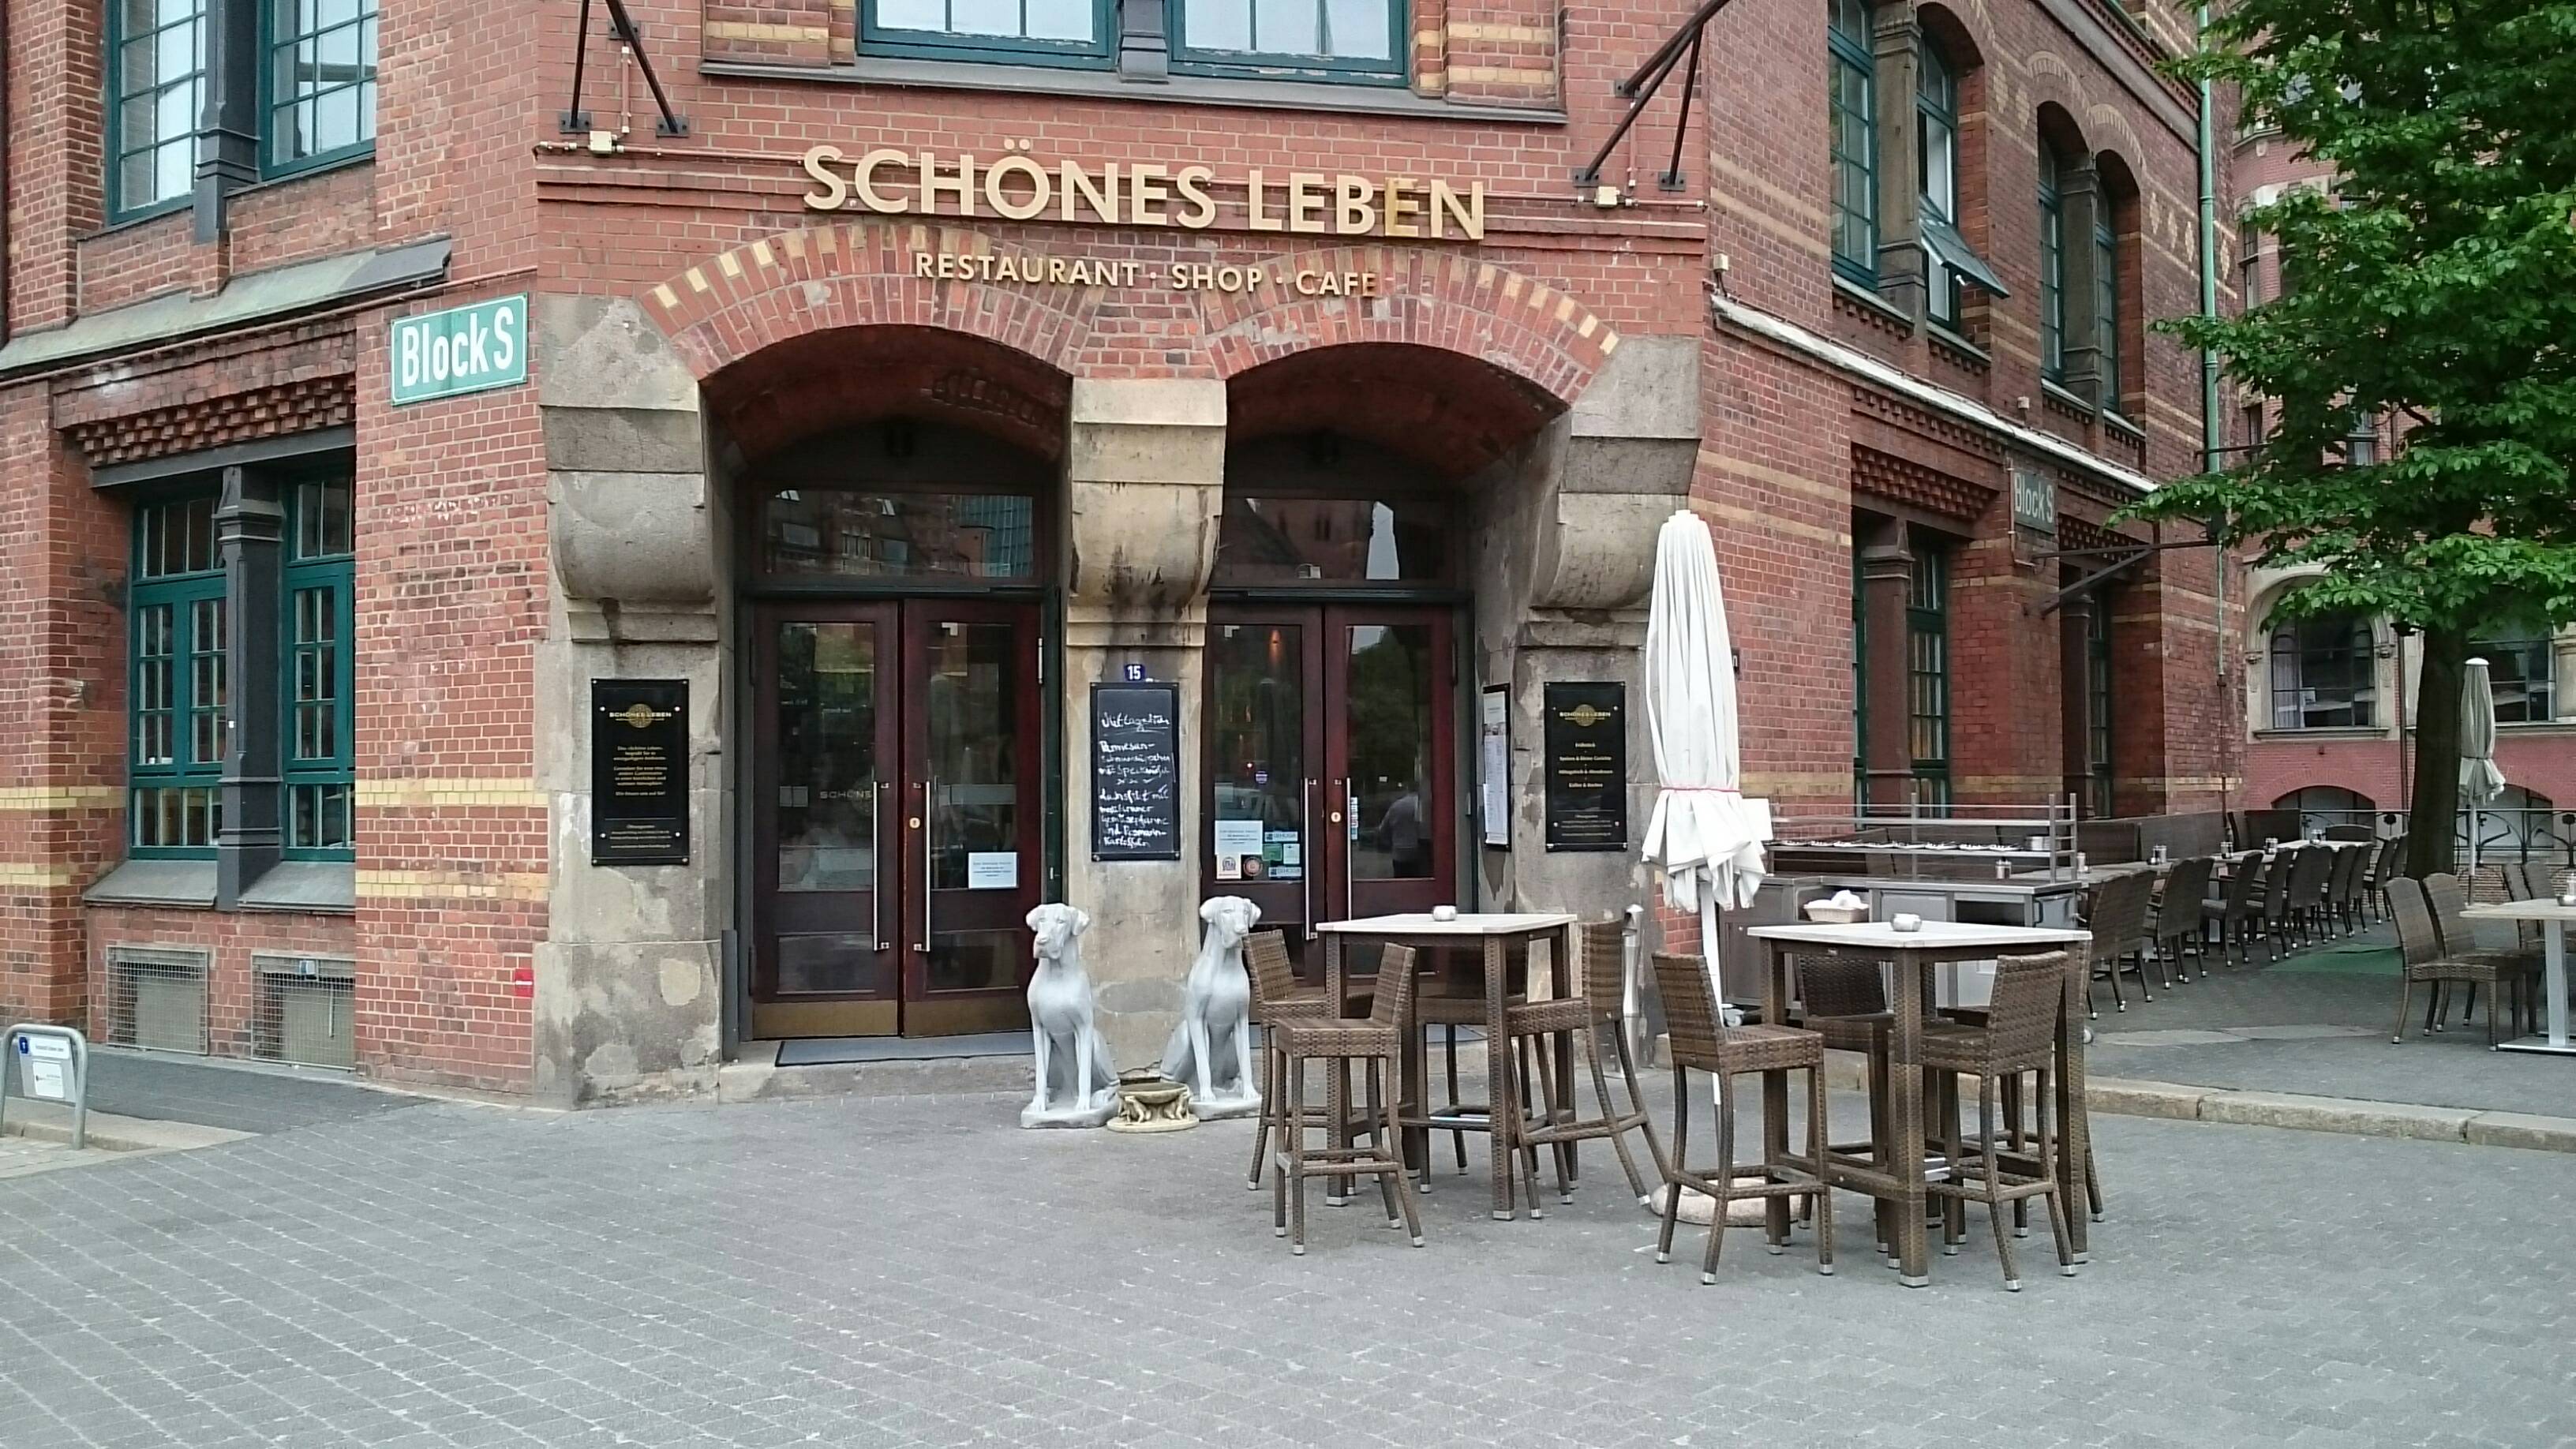 Bild 1 Schönes Leben Restaurant - Shop - Café in Hamburg